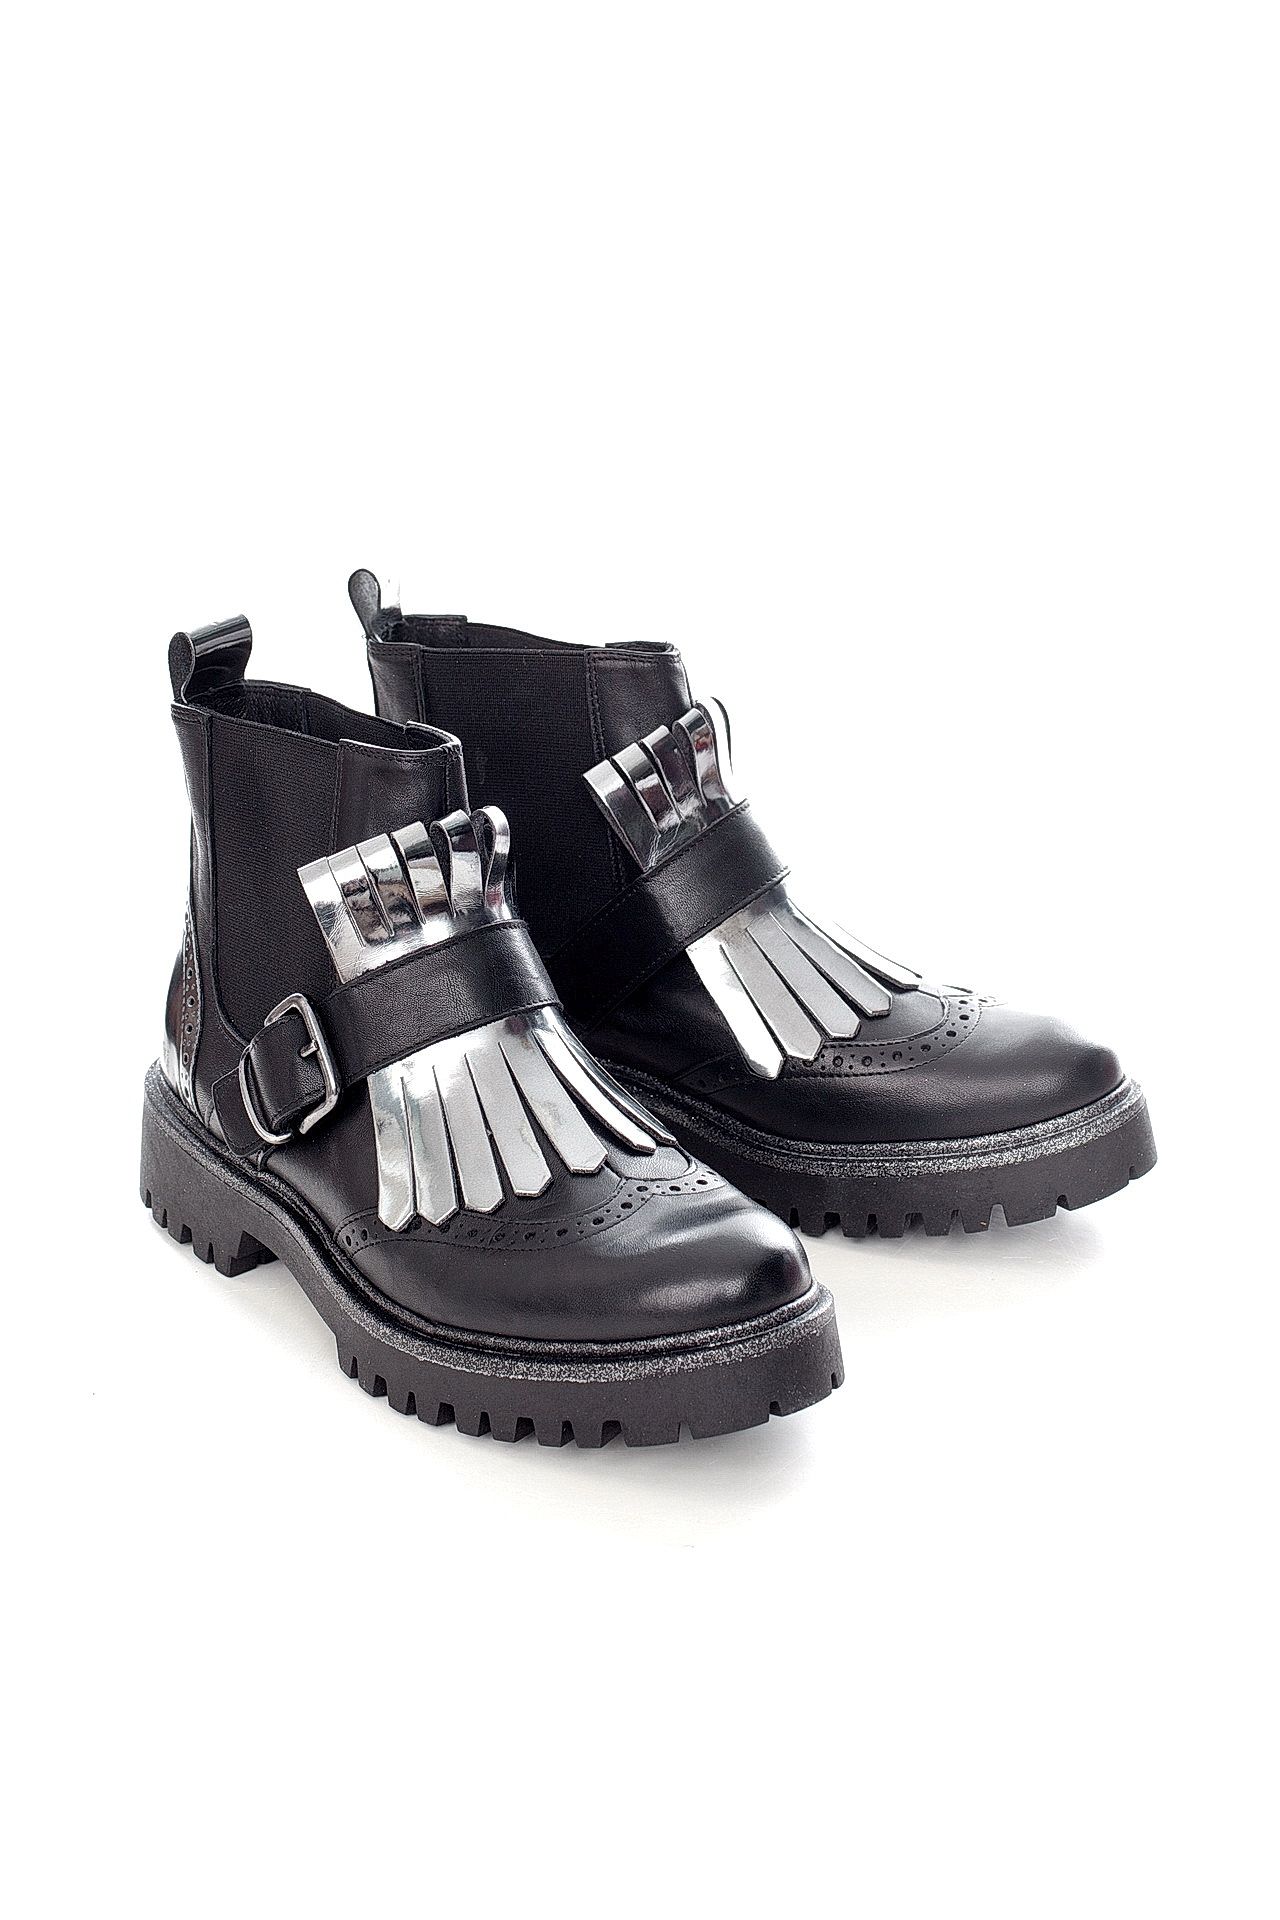 Обувь женская Ботинки LETICIA MILANO by Lestrosa (B24RO/17.2). Купить за 9030 руб.